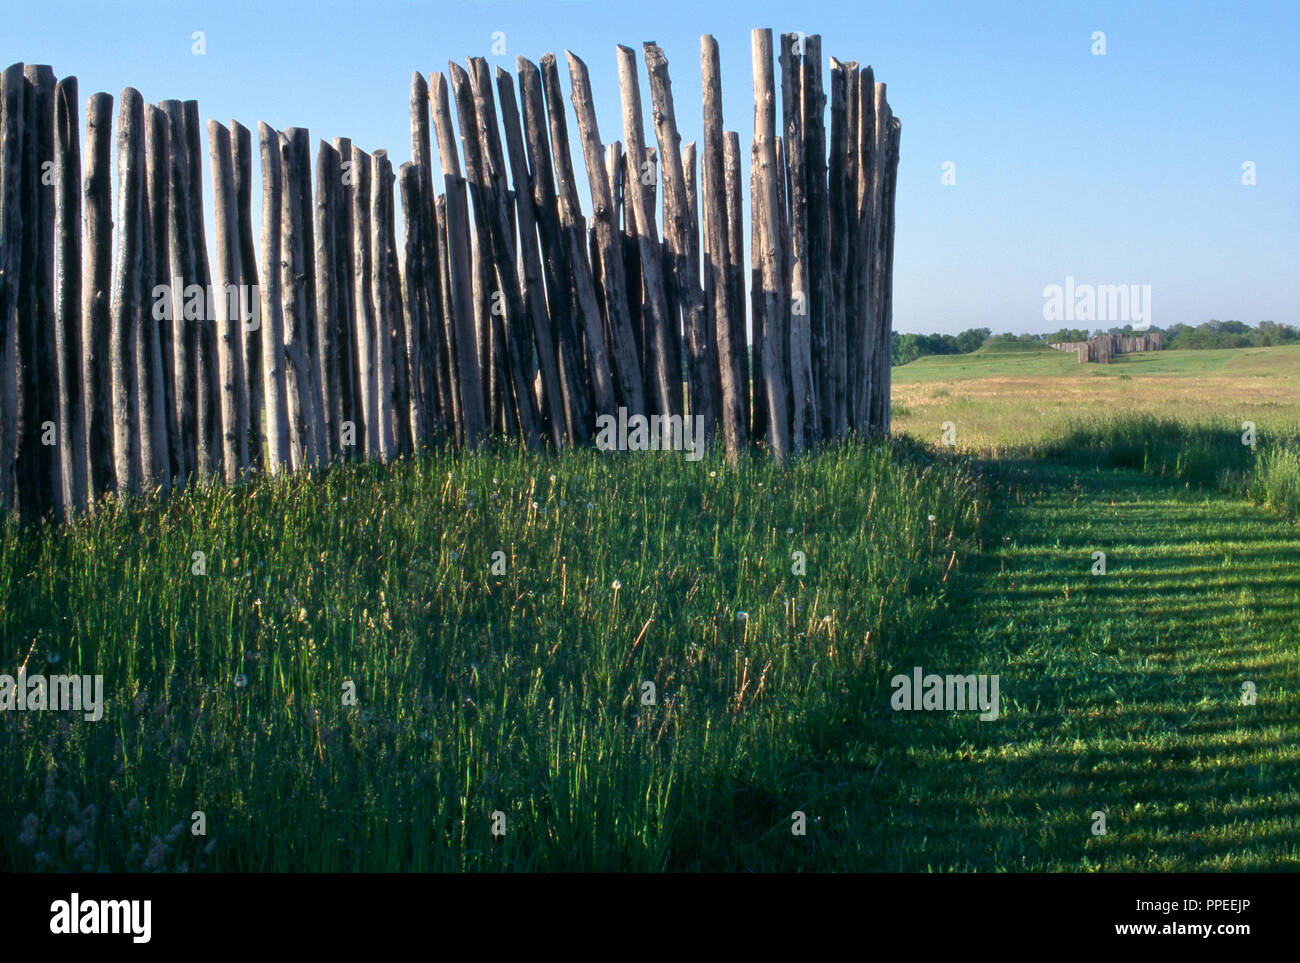 Aztalan State Park, Mississippien moyen Moundbuilder site dans le Wisconsin, mound & partie de village stockade. Photographie Banque D'Images